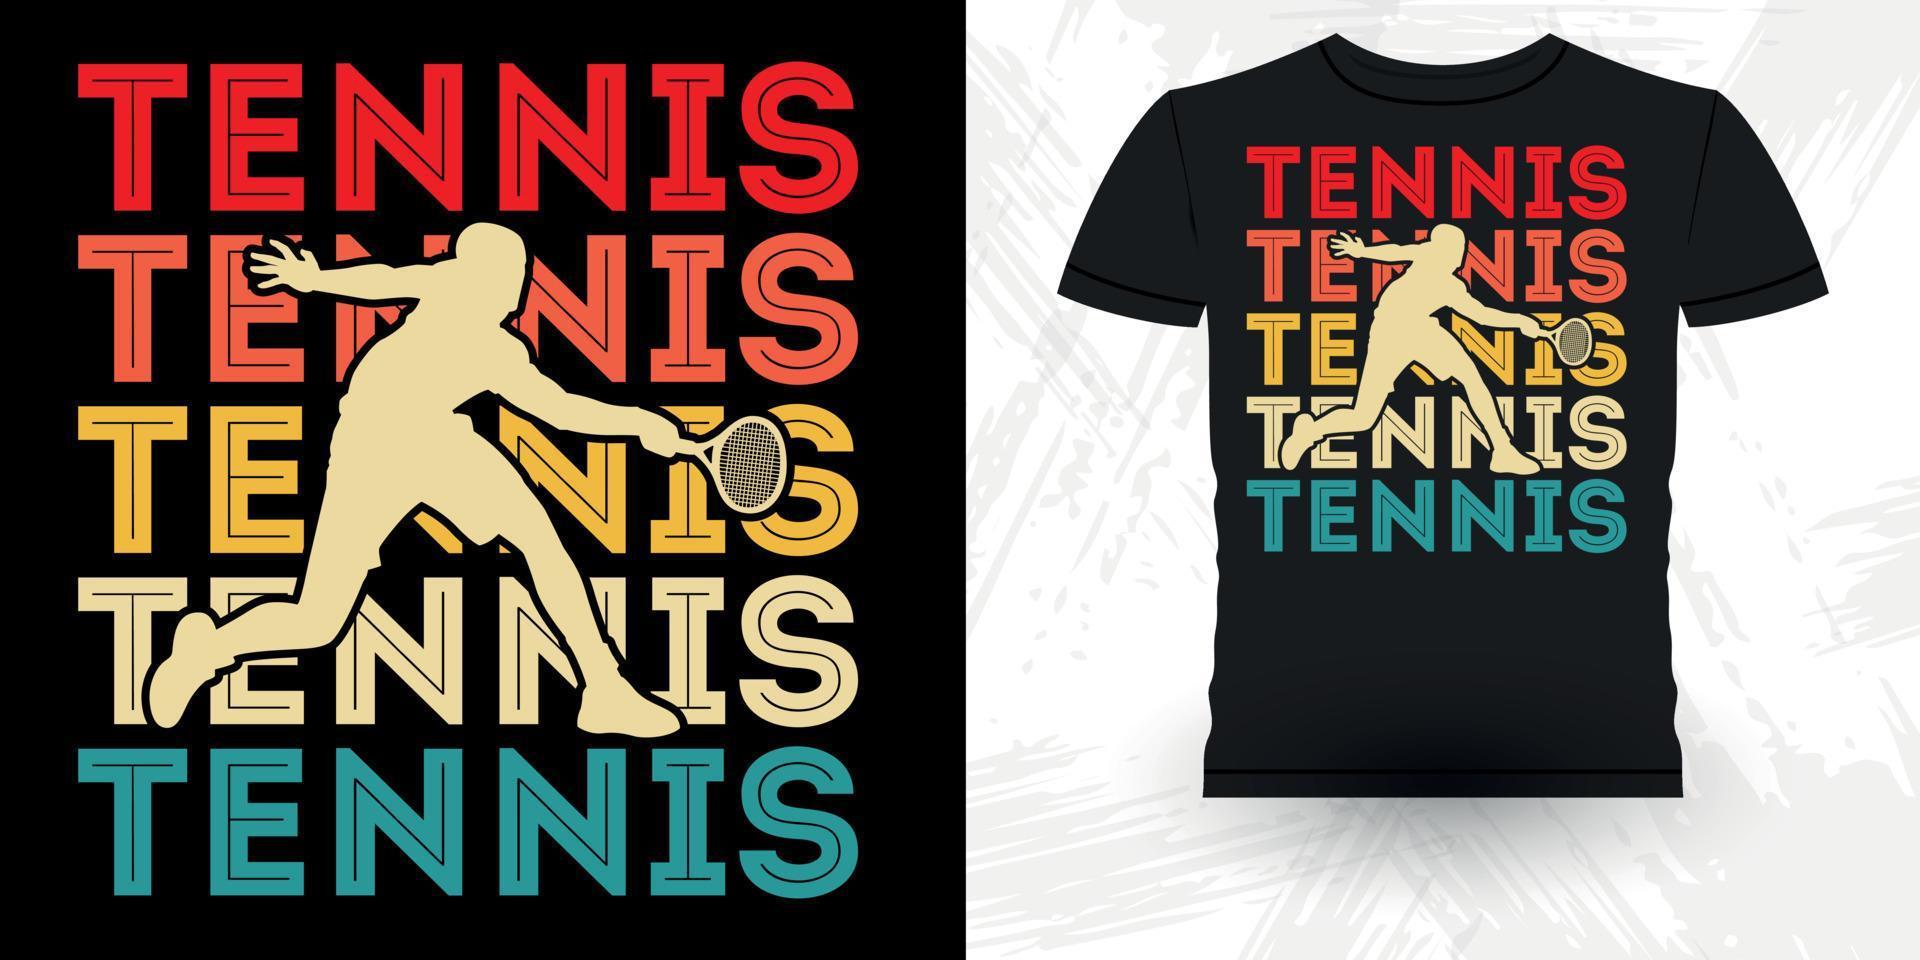 mannen Dames professioneel tennis speler grappig retro wijnoogst tennis t-shirt ontwerp vector